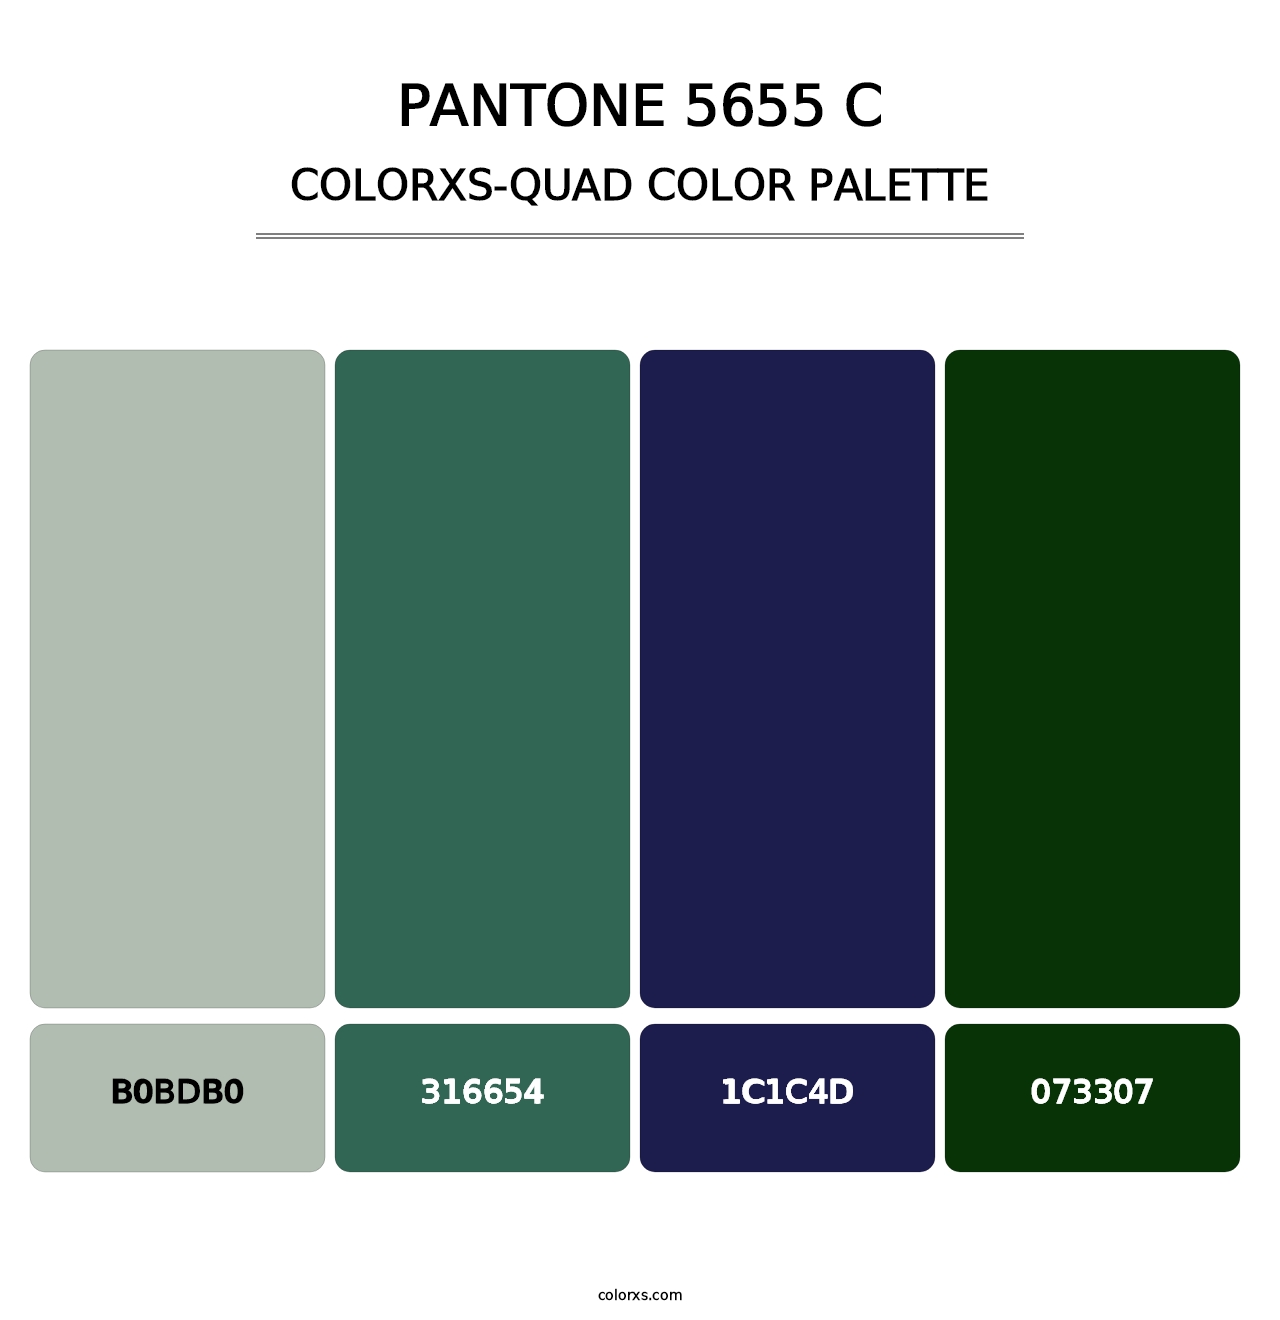 PANTONE 5655 C - Colorxs Quad Palette